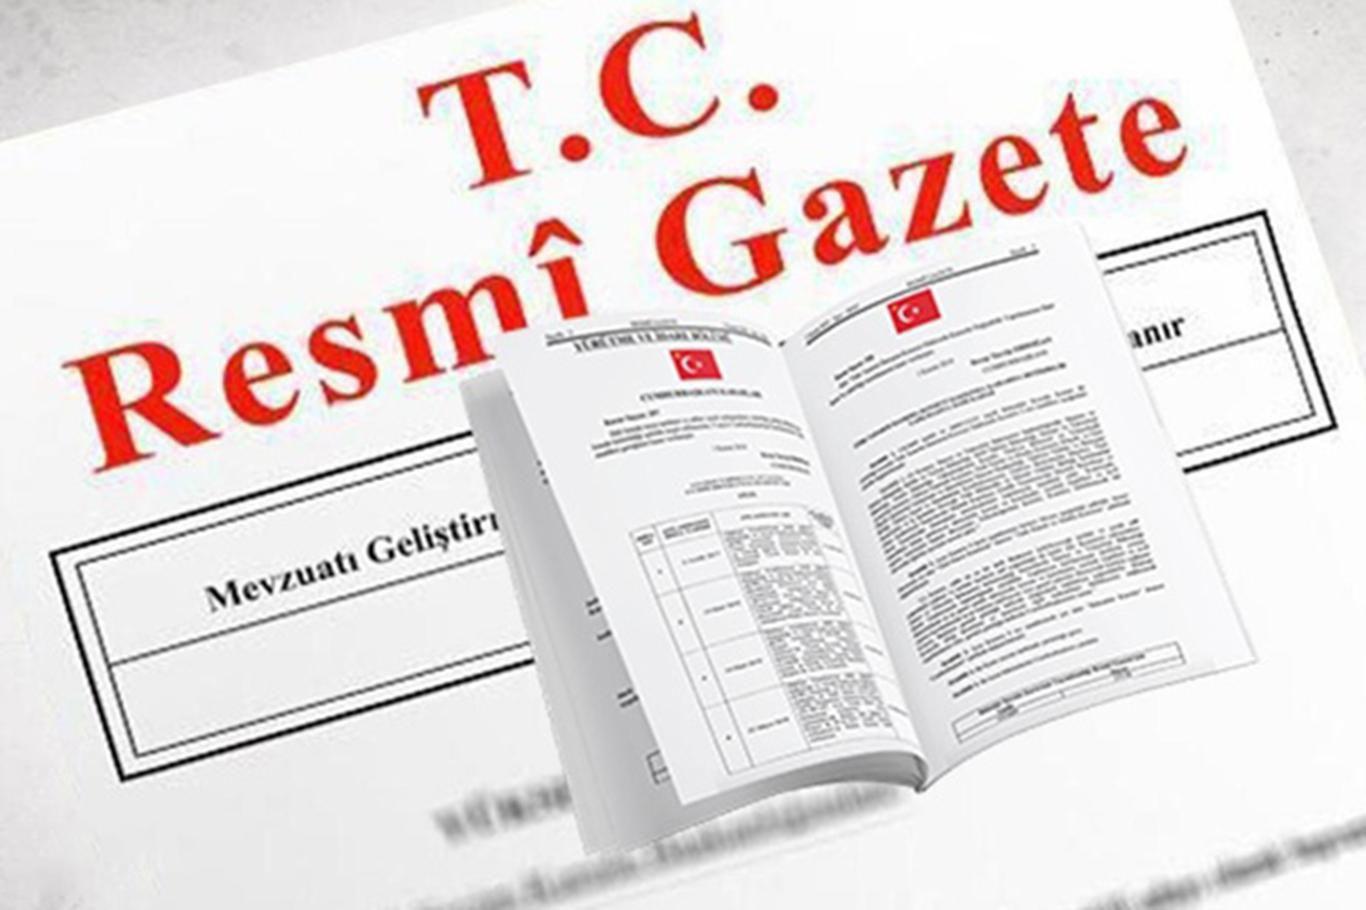 Atama kararları Resmî Gazete'de yayımlandı